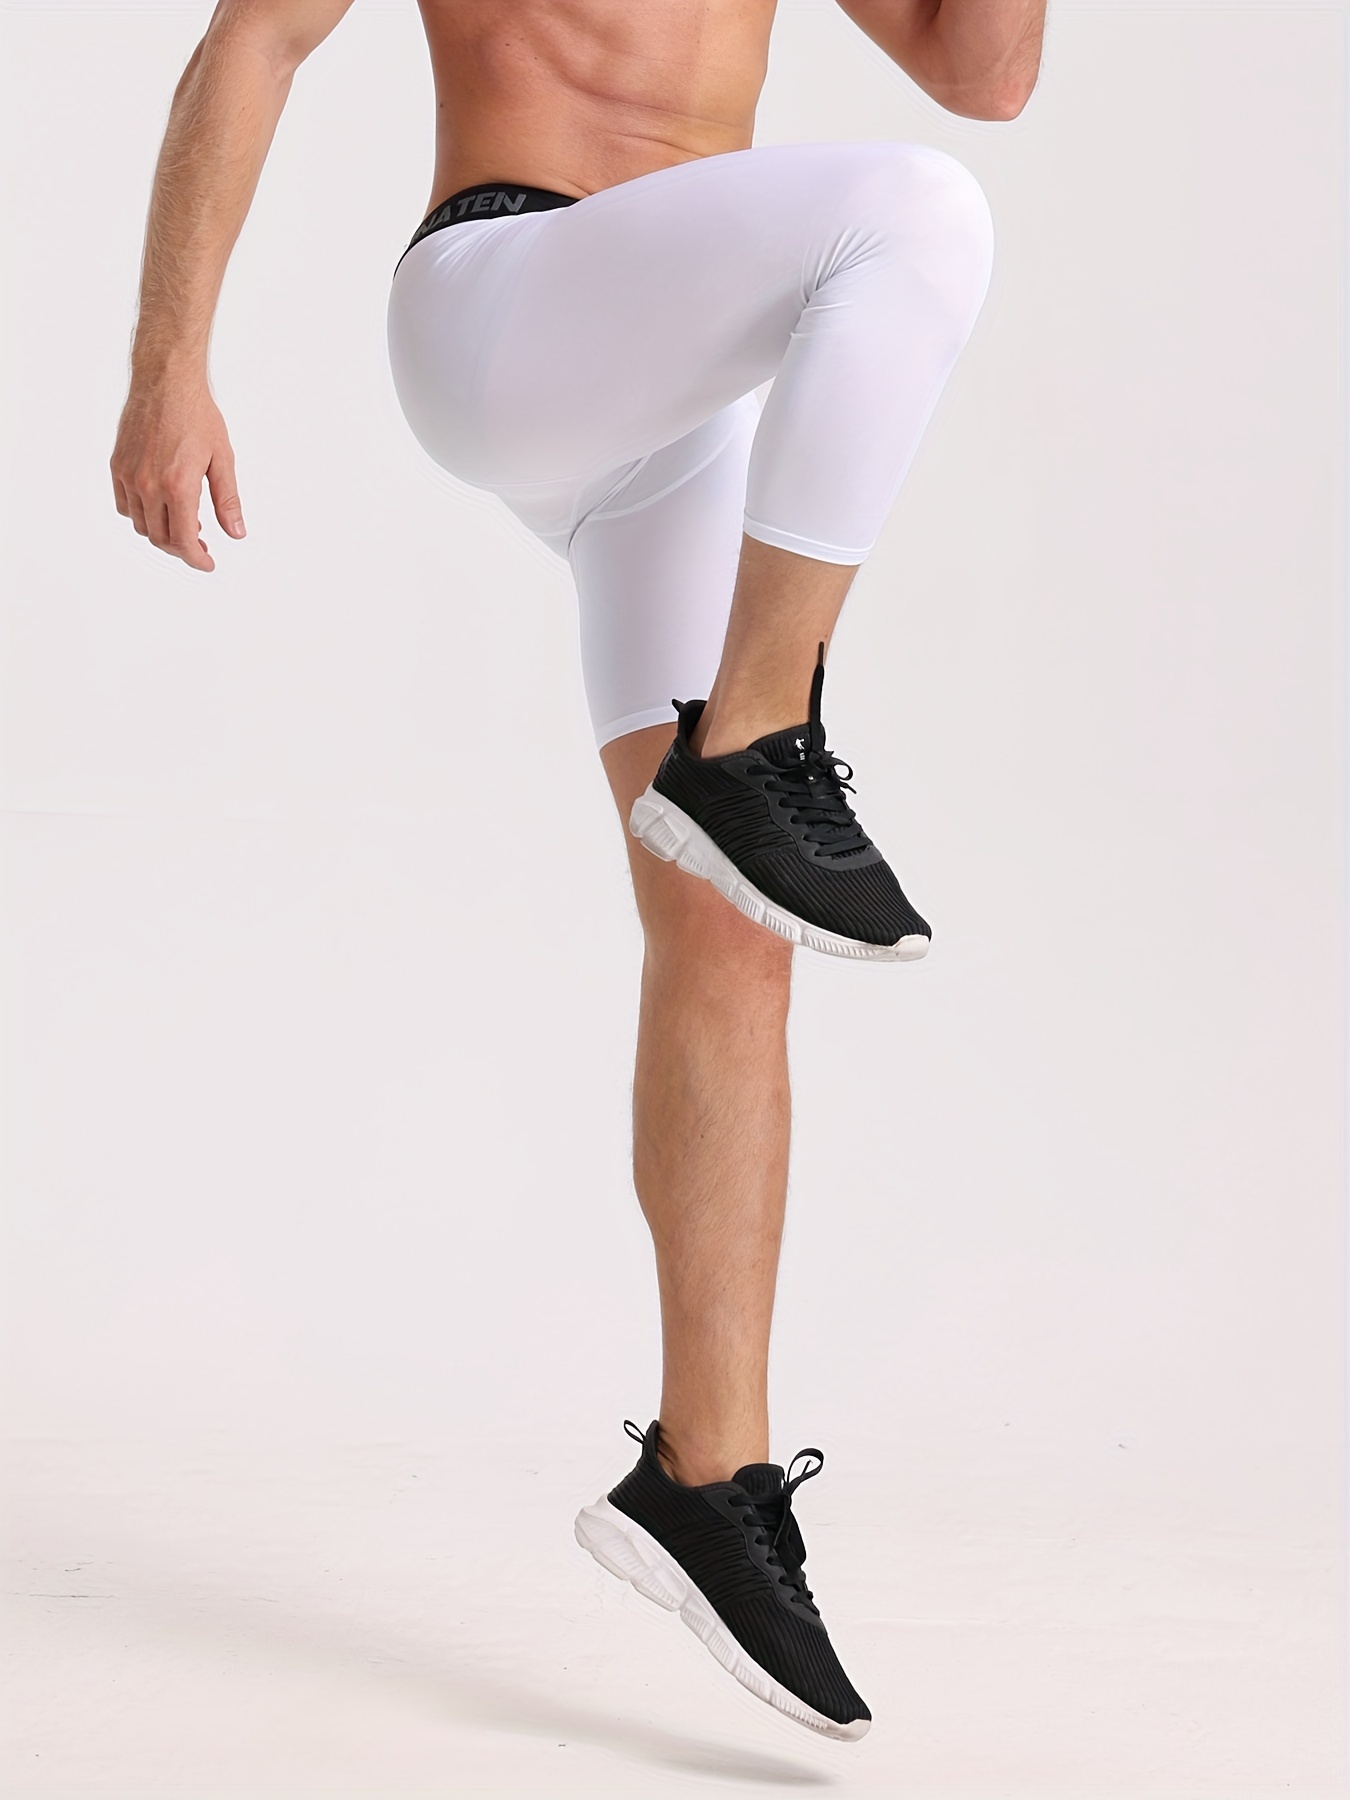 Men's Single-leg Tight Pants Basketball Training Sport Leggings